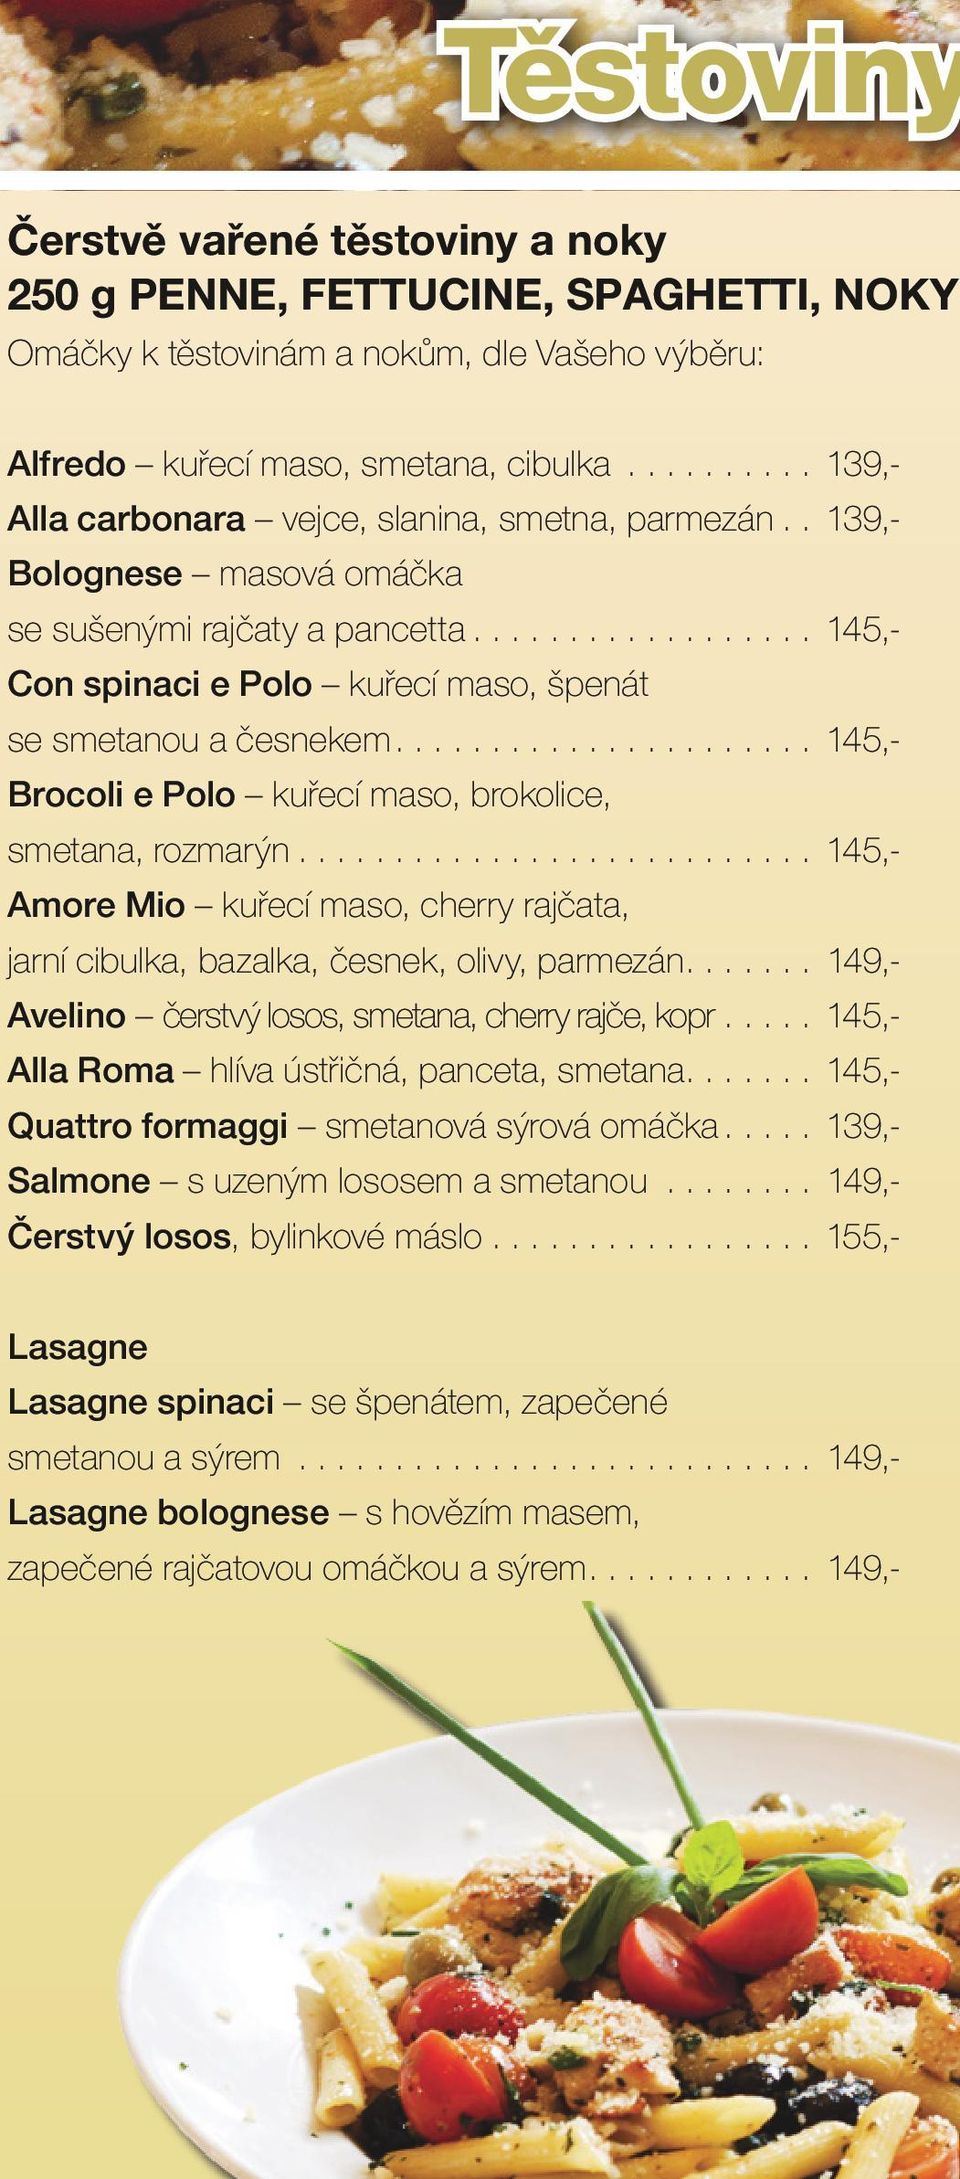 .. 145,- Brocoli e Polo kuřecí maso, brokolice, smetana, rozmarýn... 145,- Amore Mio kuřecí maso, cherry rajčata, jarní cibulka, bazalka, česnek, olivy, parmezán.